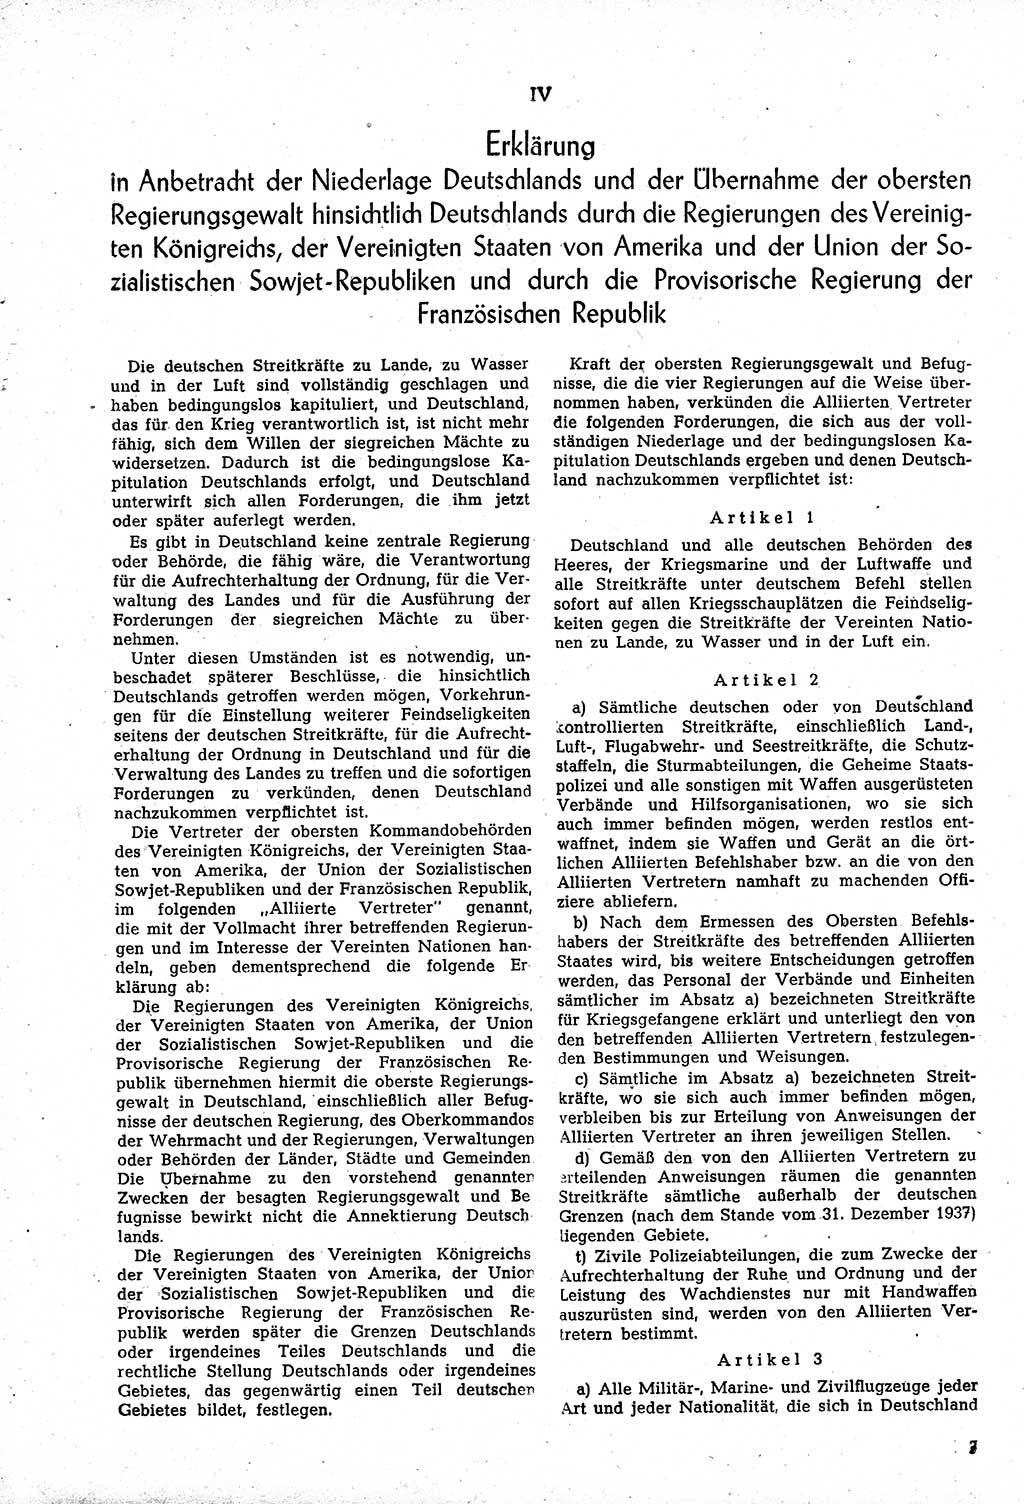 Amtsblatt des Kontrollrats (ABlKR) in Deutschland, Ergänzungsblatt Nr. 1, Sammlung von Urkunden betreffend die Errichtung der Alliierten Kontrollbehörde 1945, Seite 7 (ABlKR Dtl., Erg. Bl. 1 1945, S. 7)